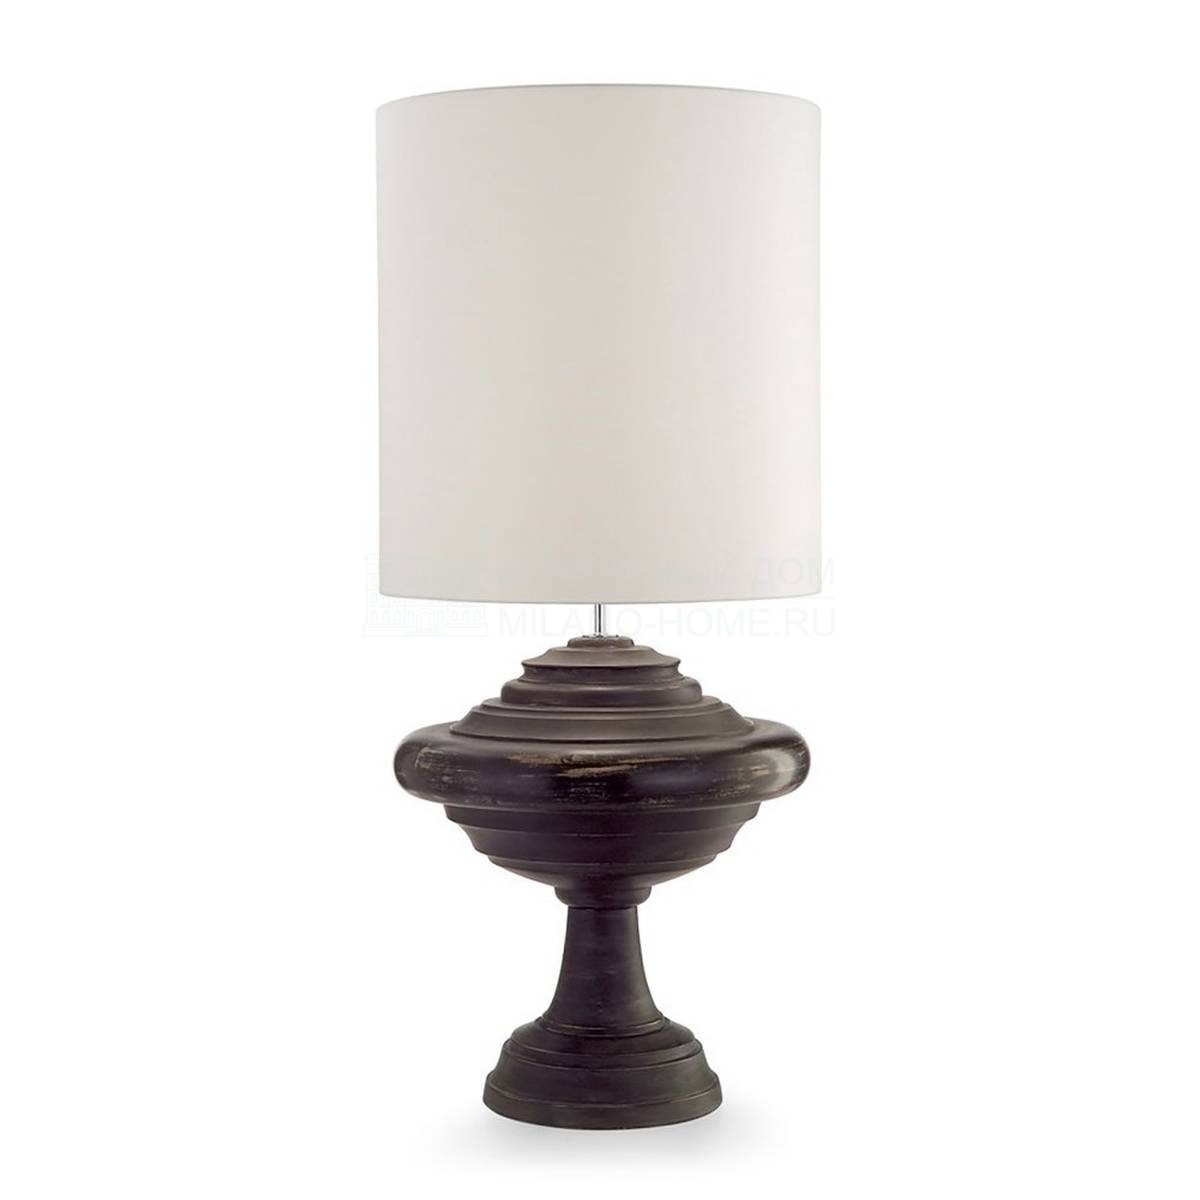 Настольная лампа Epica table lamp из Италии фабрики MARIONI